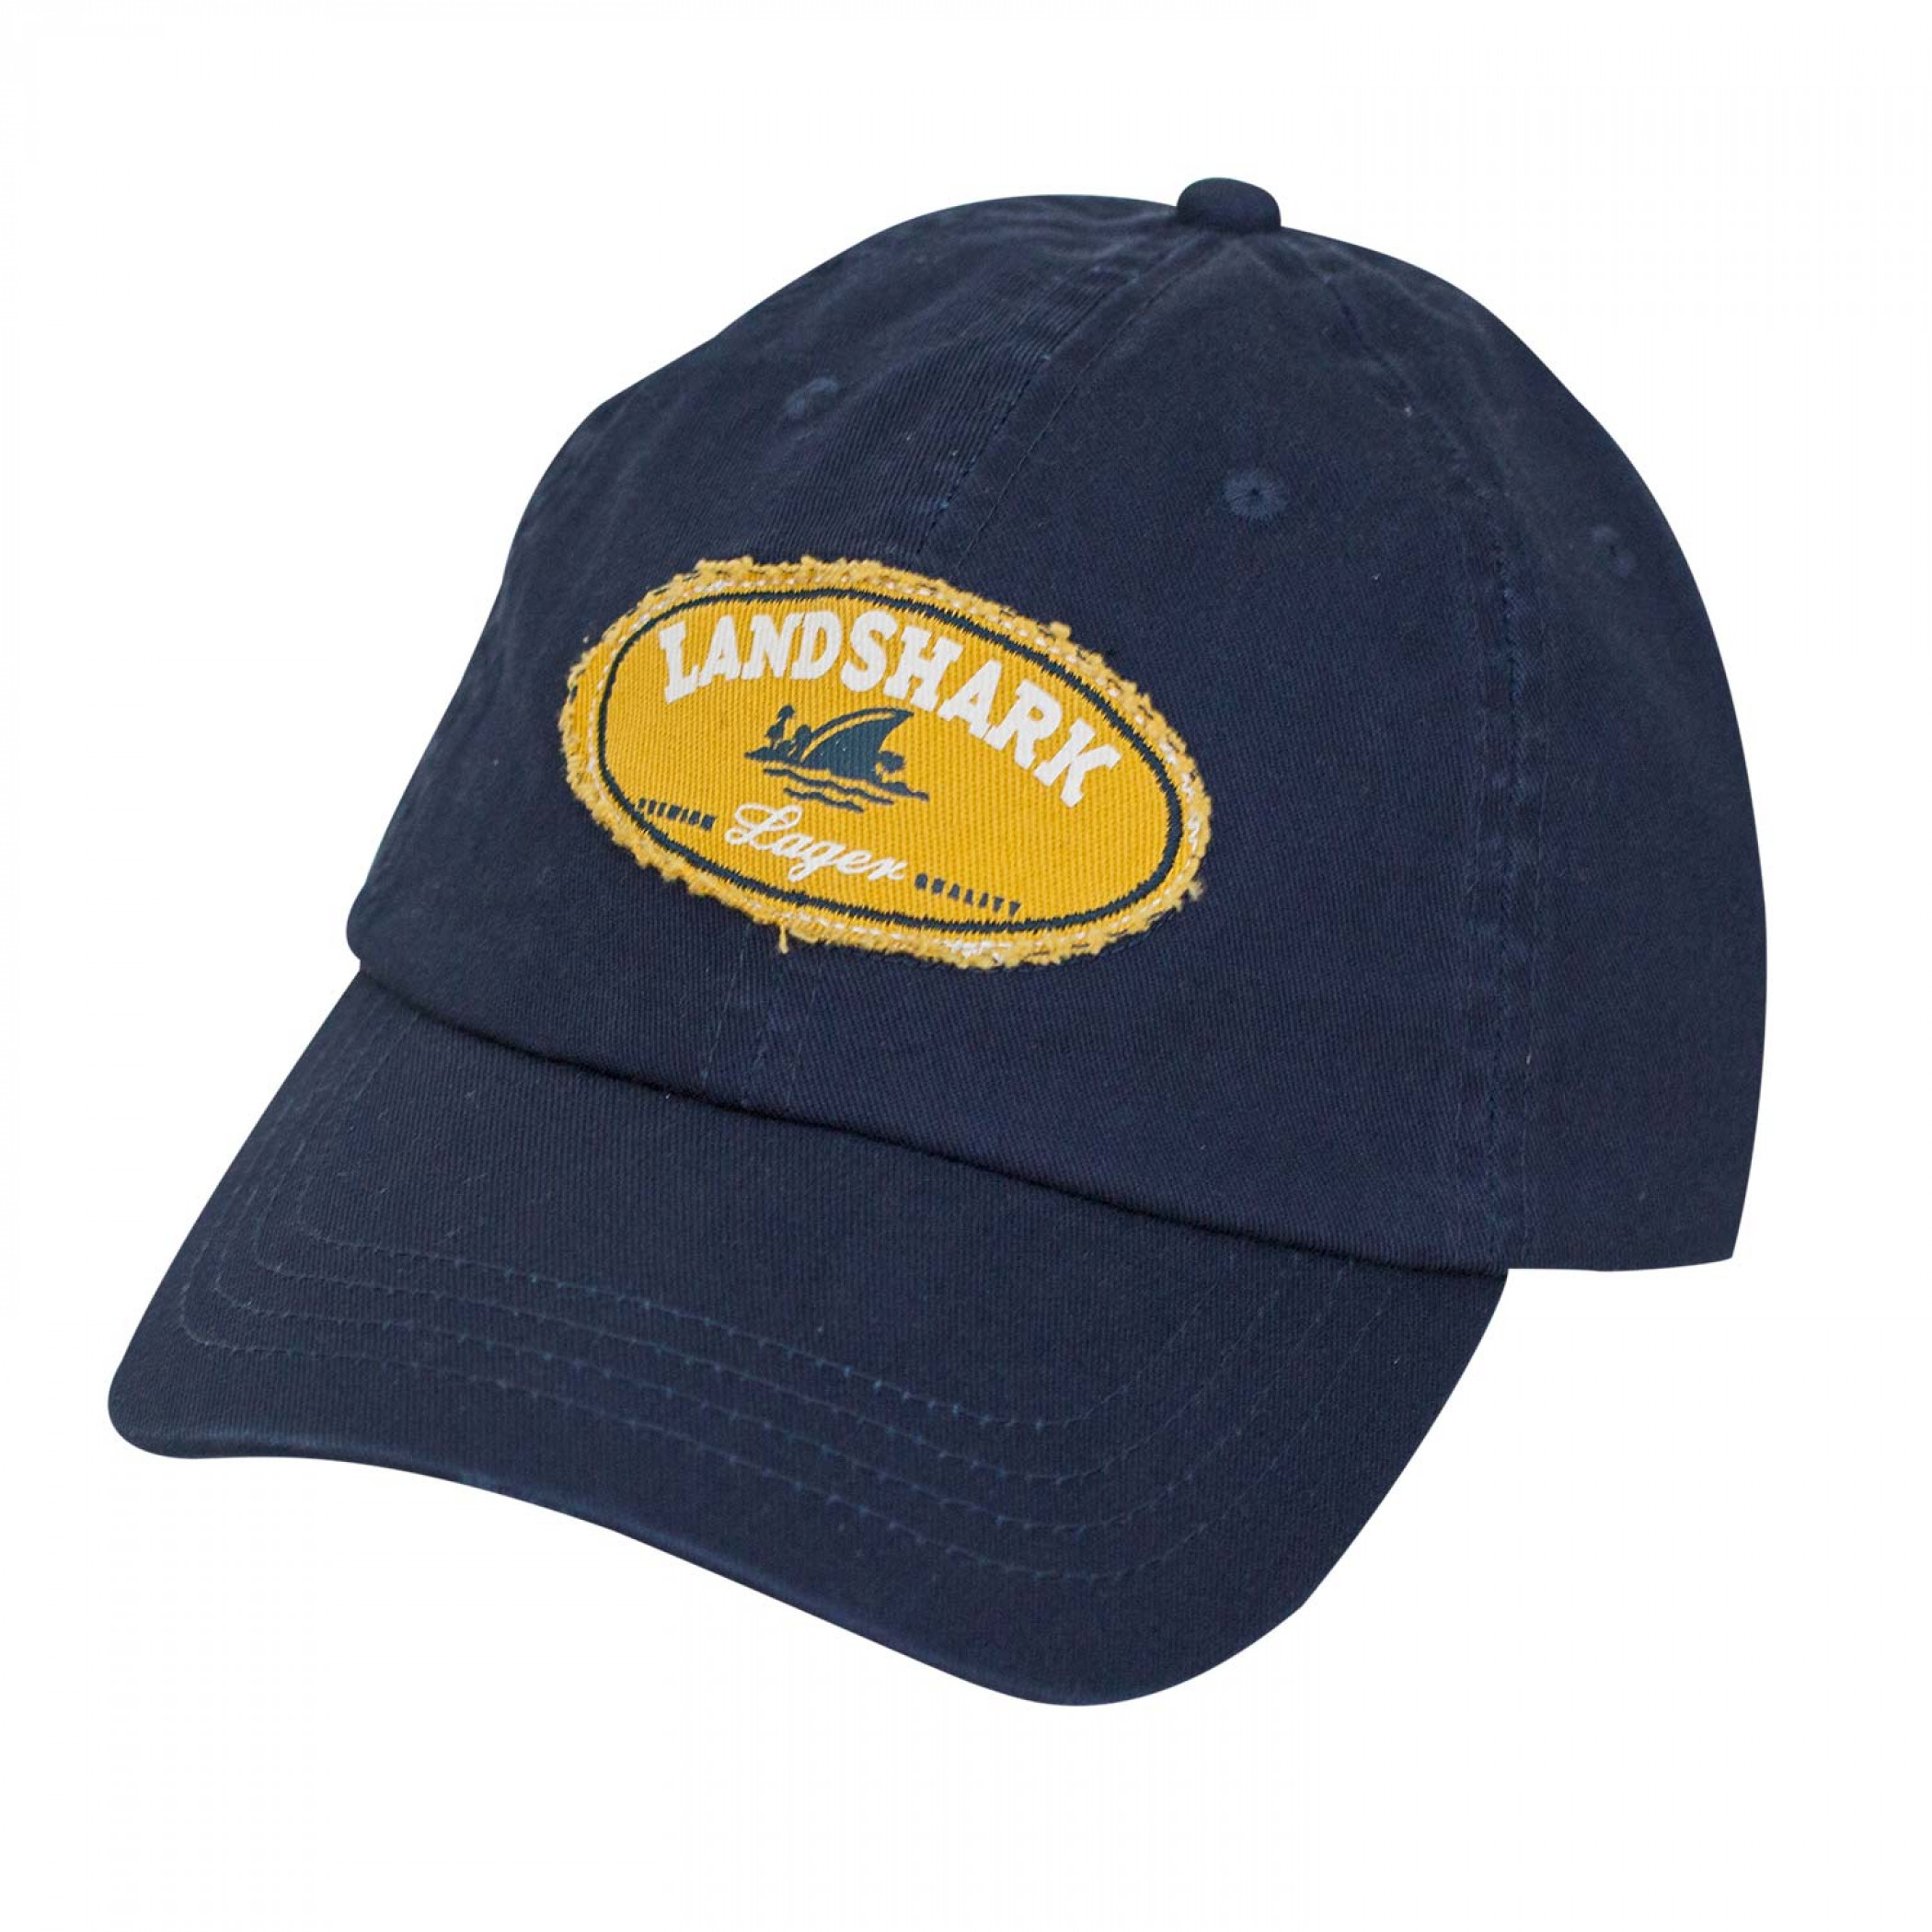 Landshark Adjustable Navy Blue Hat